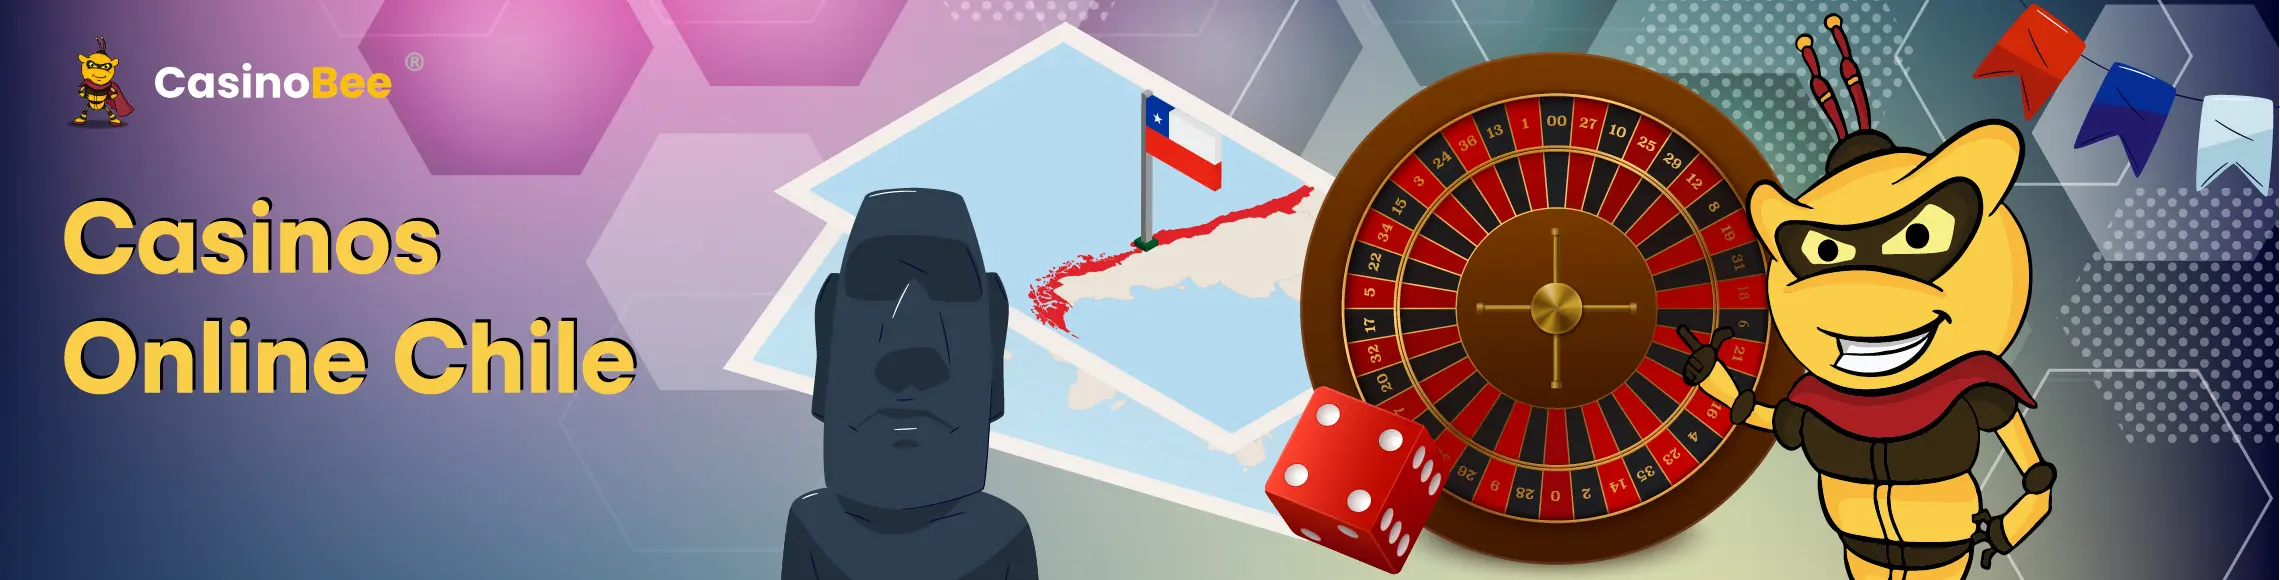 Futuro de los casinos online en Chile